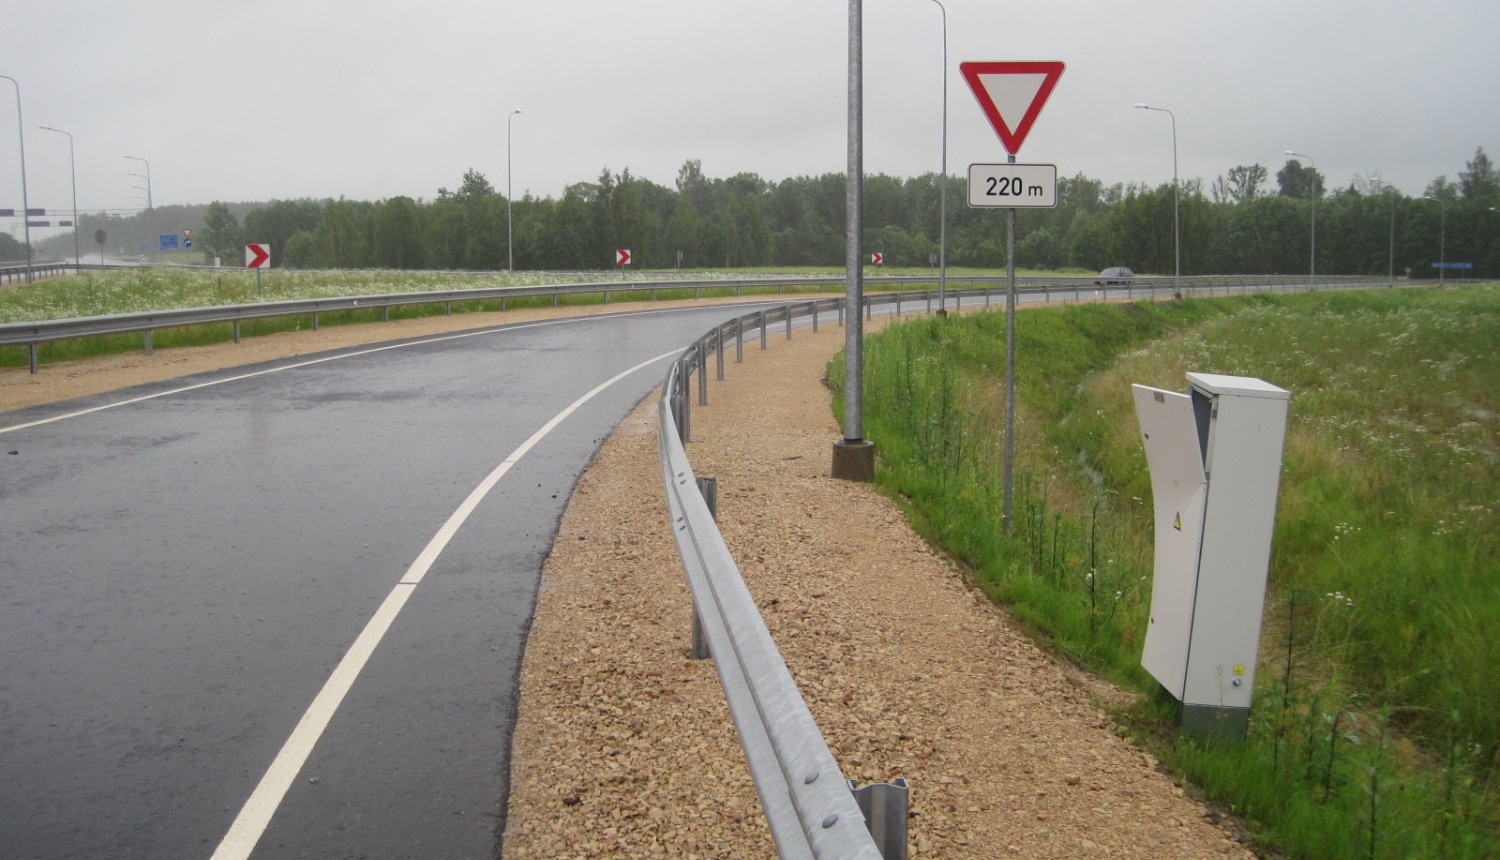 VAS "Latvijas Valsts ceļi" plāno īstenot “Valsts galvenā autoceļa A10 Rīga – Ventspils posma no km 45,1 līdz km 91,8 iespējamā rekonstrukcija” projektu